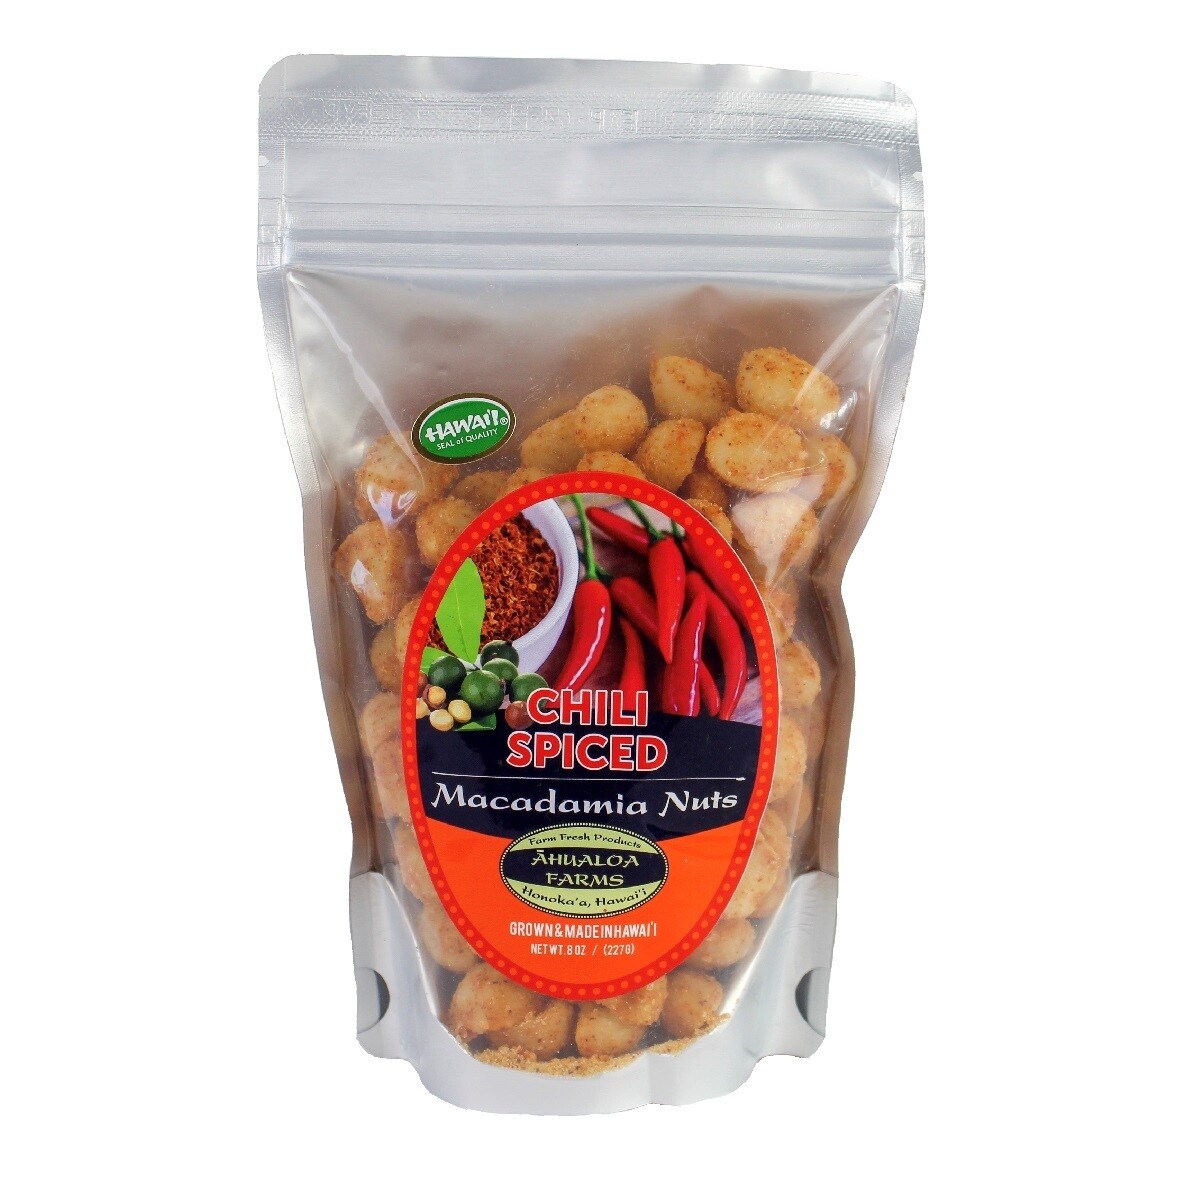 Macadamia Nuts, Ahualoa Farms - Spice Chili 8 Oz.)